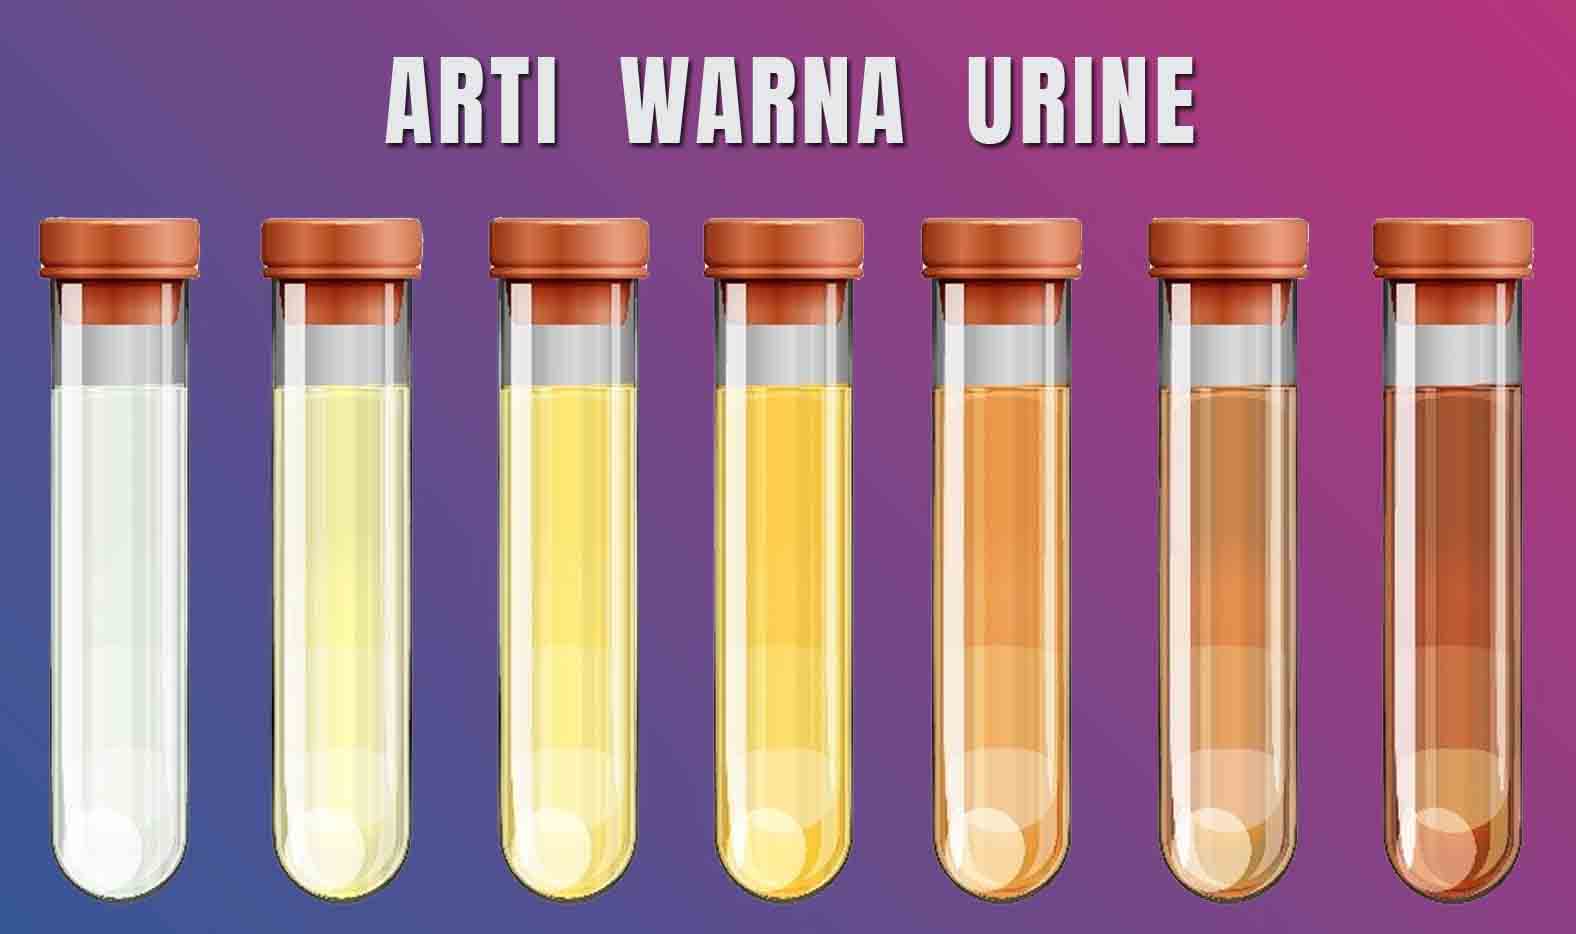 Ini Tanda Kesehatan Tubuh Dilihat dari Warna Urine